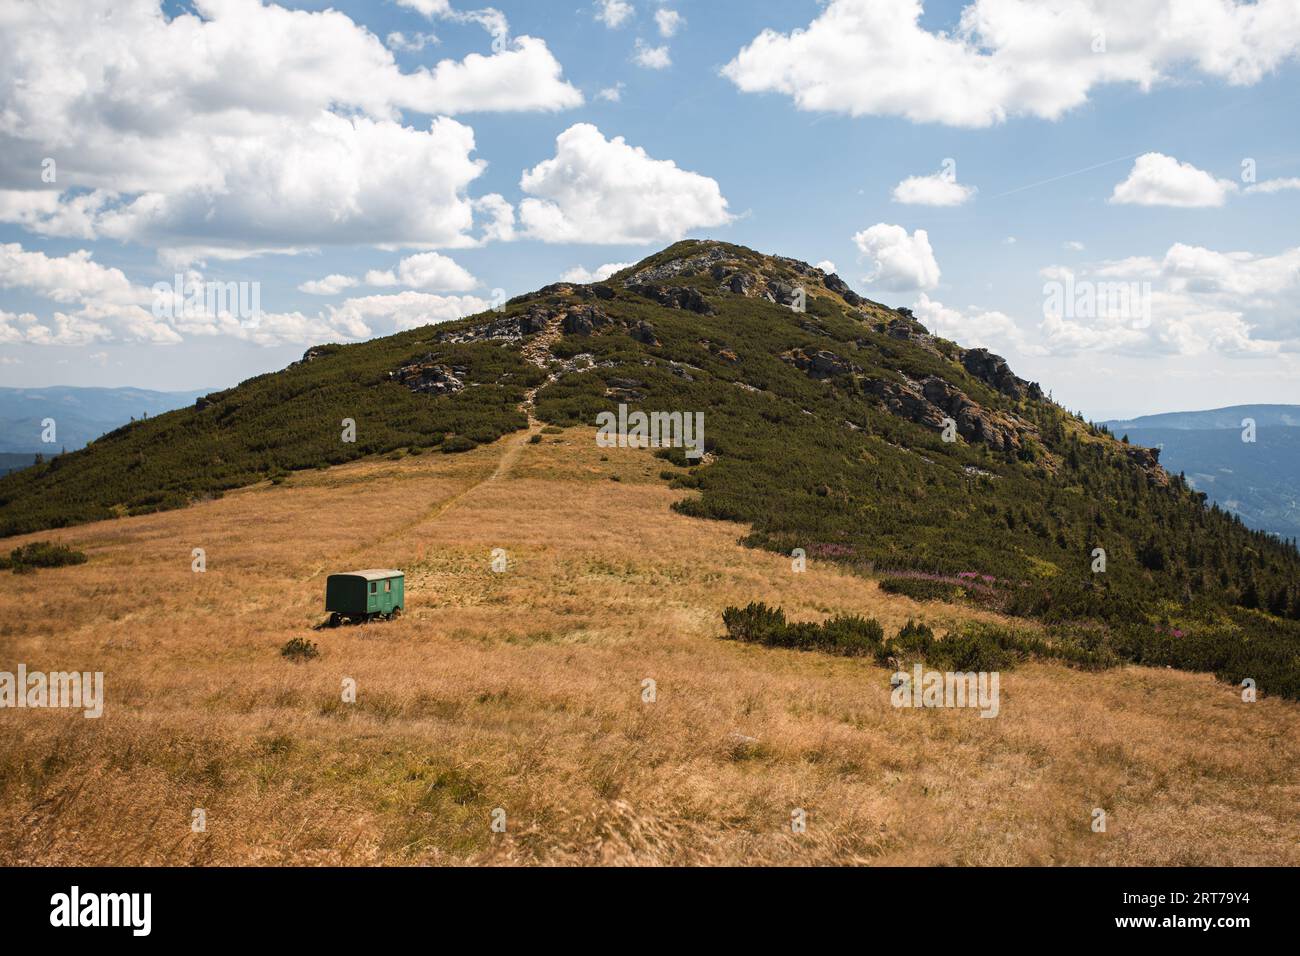 Cresta della montagna e prato asciutto con carovana verde sotto la collina. Foto paesaggistica della collina nel parco nazionale della Slovacchia in Europa nelle giornate di sole. Foto Stock